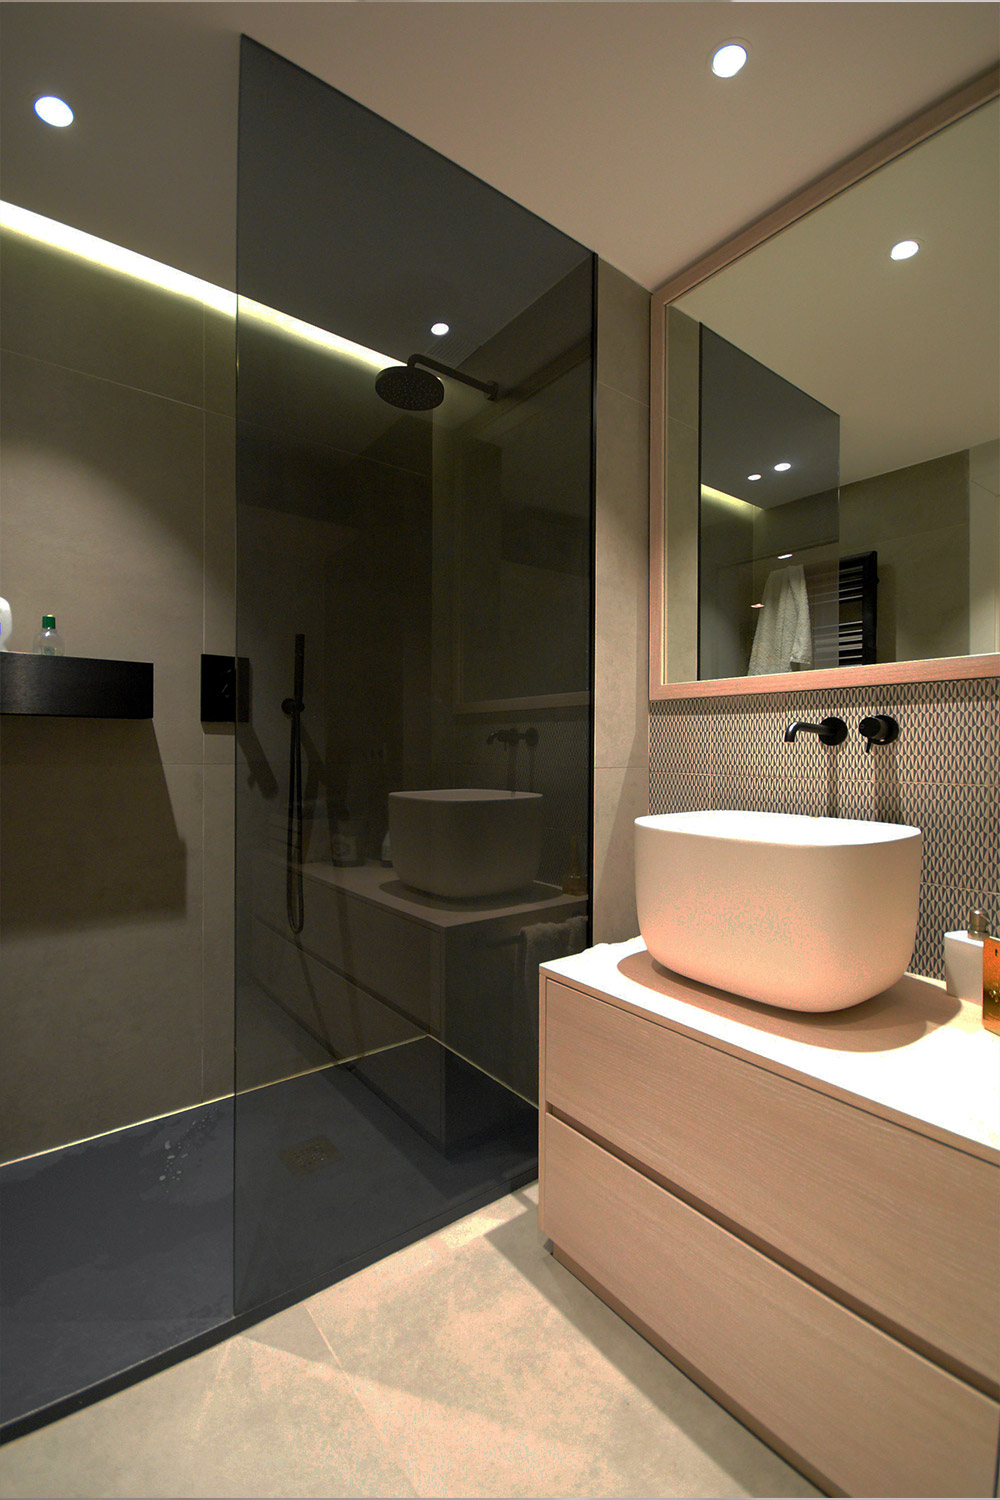 diseño de baño de estilo contemporáneo - baños de estilo contemporáneo